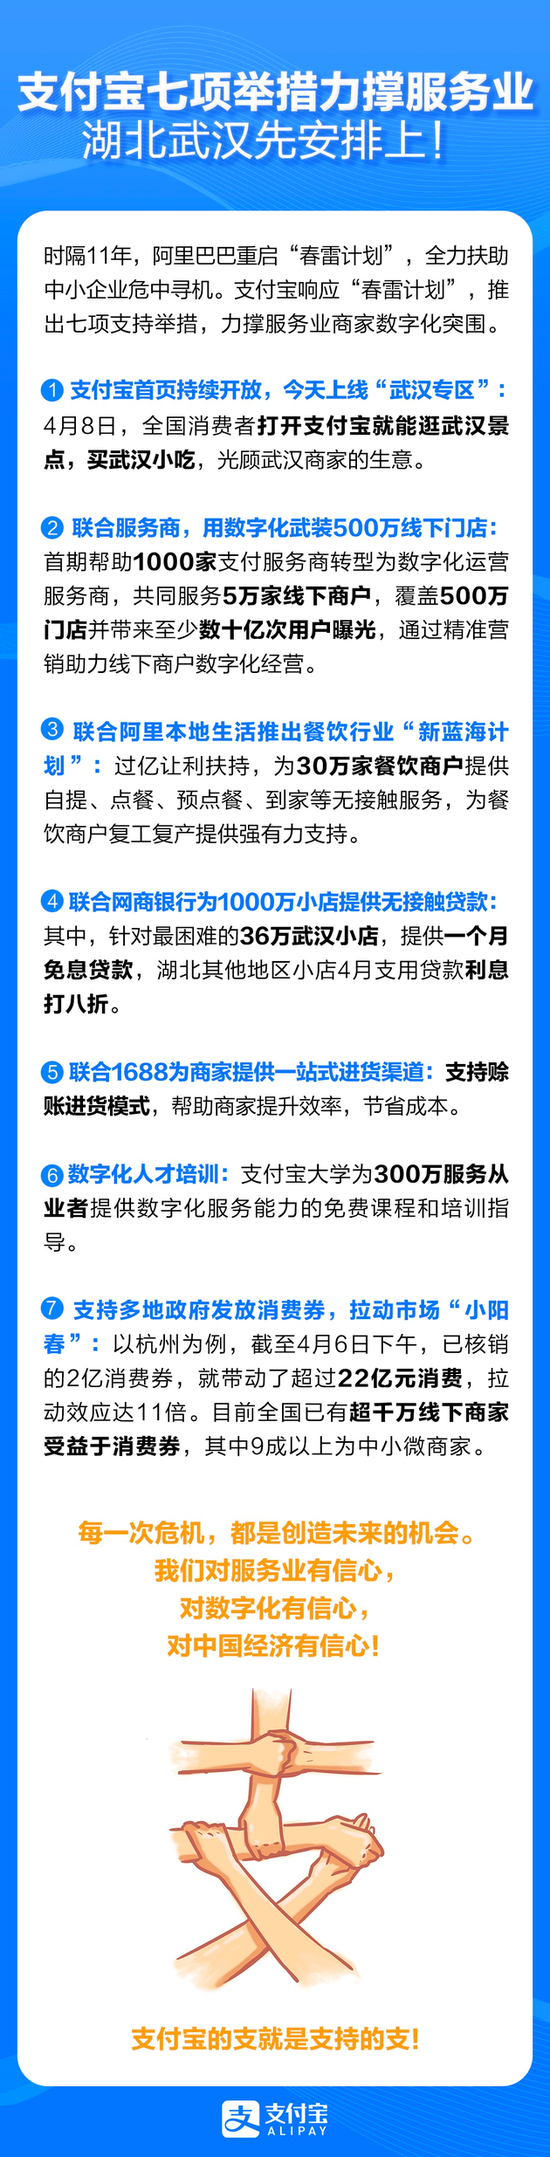 支付宝7项举措助力服务业数字化突围 率先在武汉落地